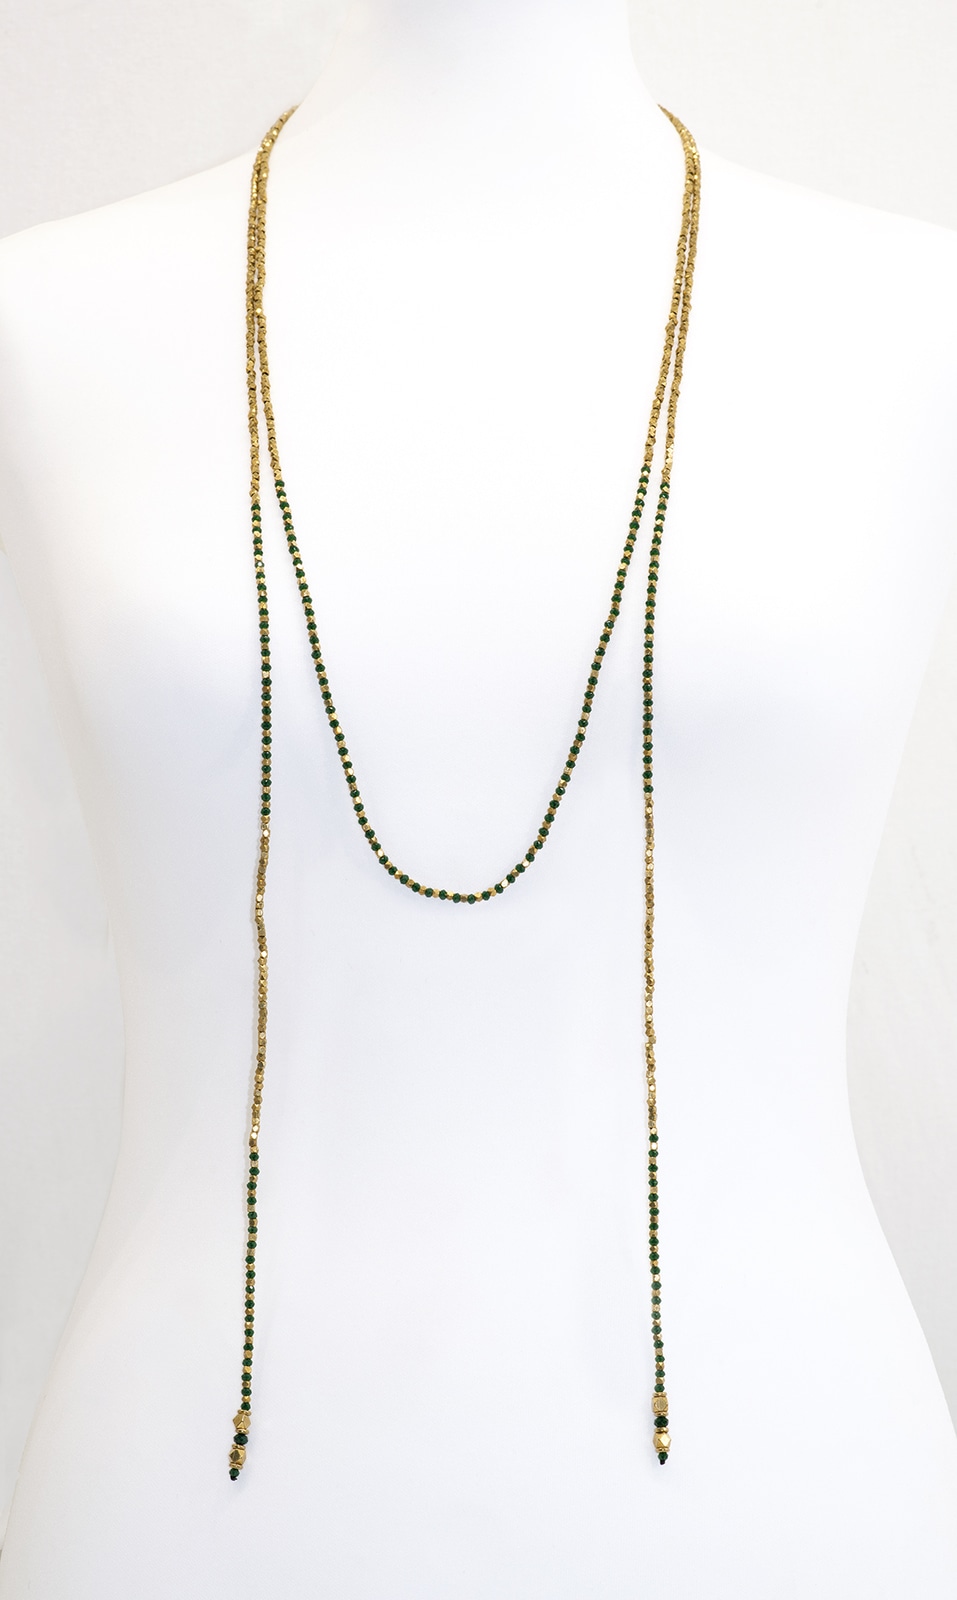 Sautoir perles vertes et dorées de la marque française Nataraj